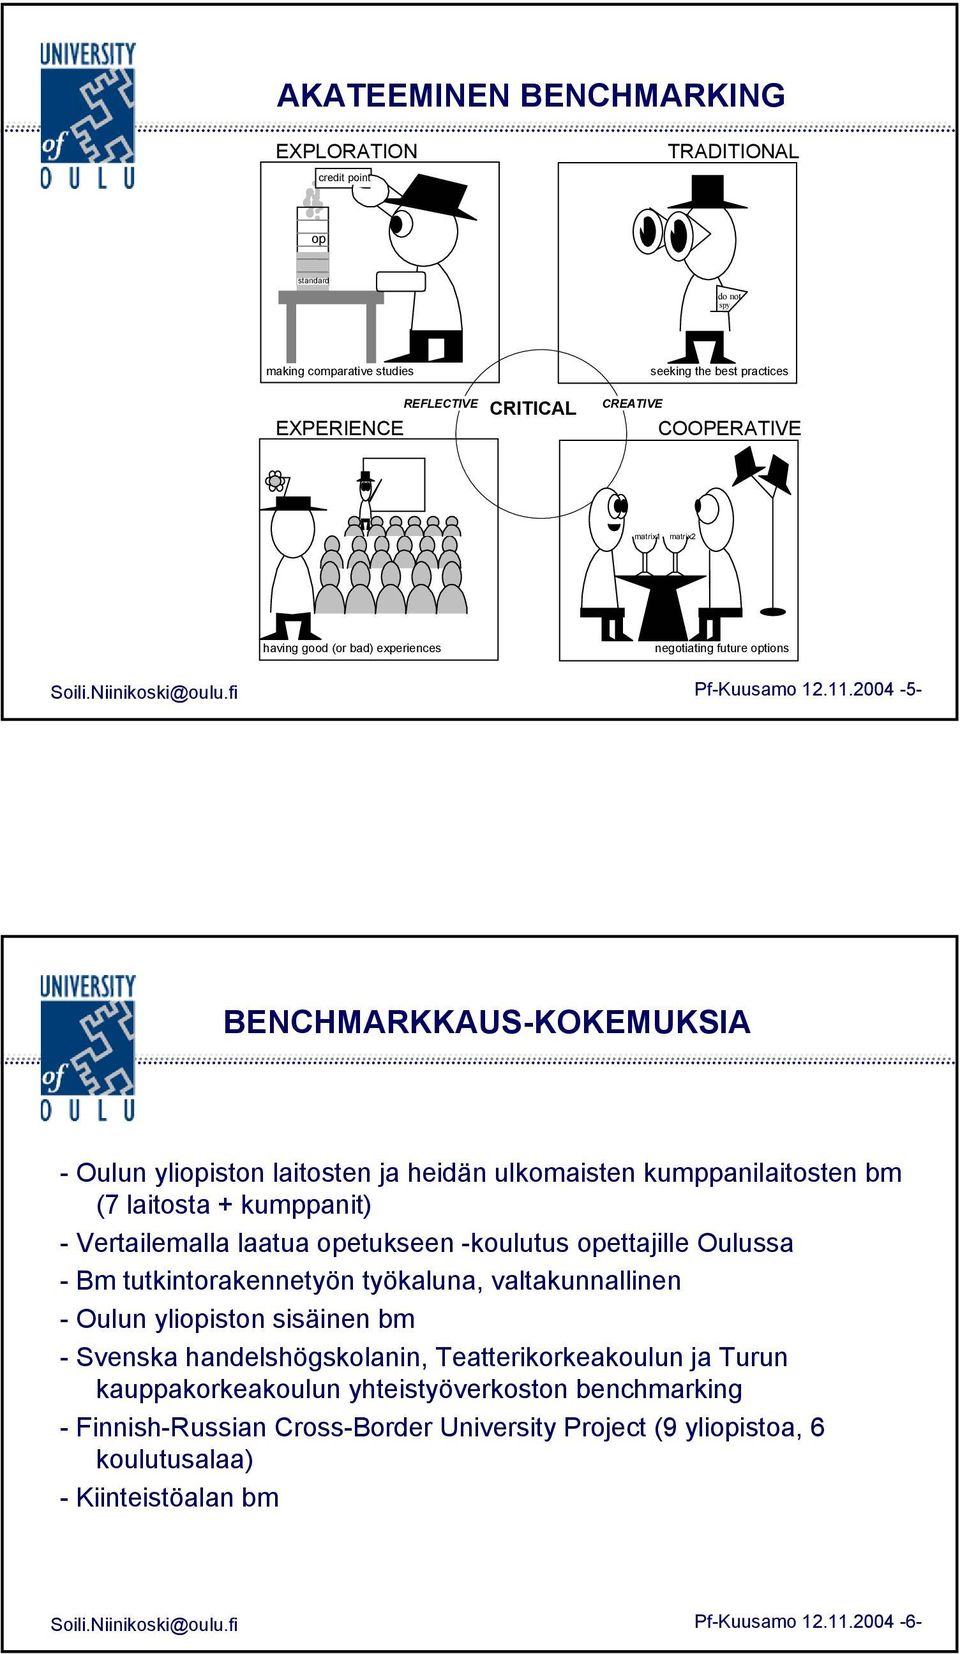 2004-5- BENCHMARKKAUS-KOKEMUKSIA - Oulun yliopiston laitosten ja heidän ulkomaisten kumppanilaitosten bm (7 laitosta + kumppanit) - Vertailemalla laatua opetukseen -koulutus opettajille Oulussa - Bm